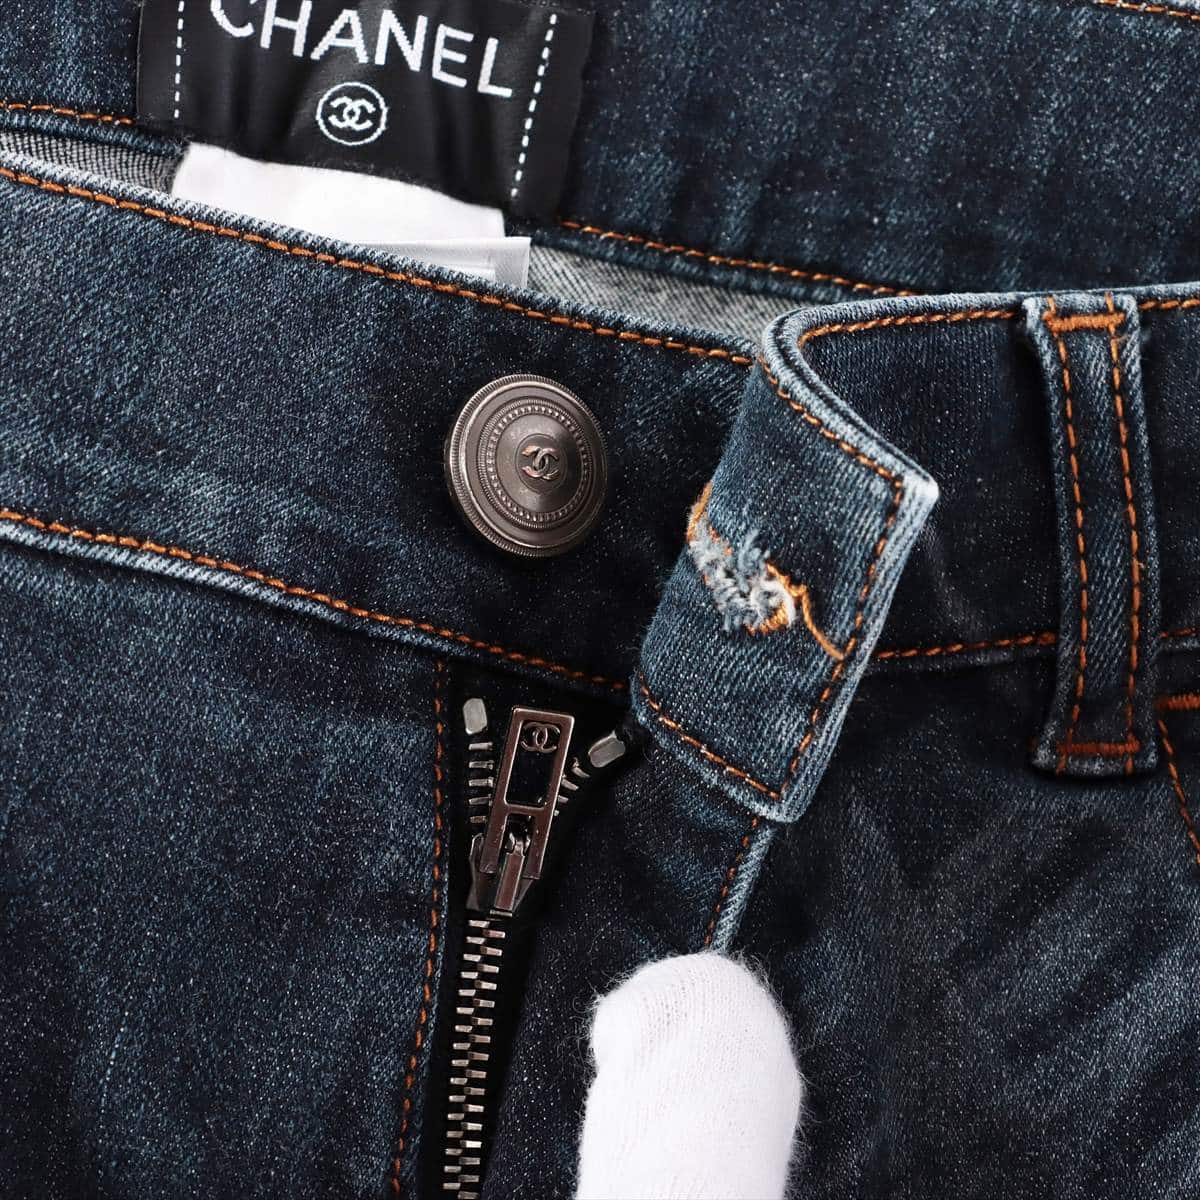 Chanel Coco Button P47 Cotton Denim pants 36 Ladies' Black  Wash processing